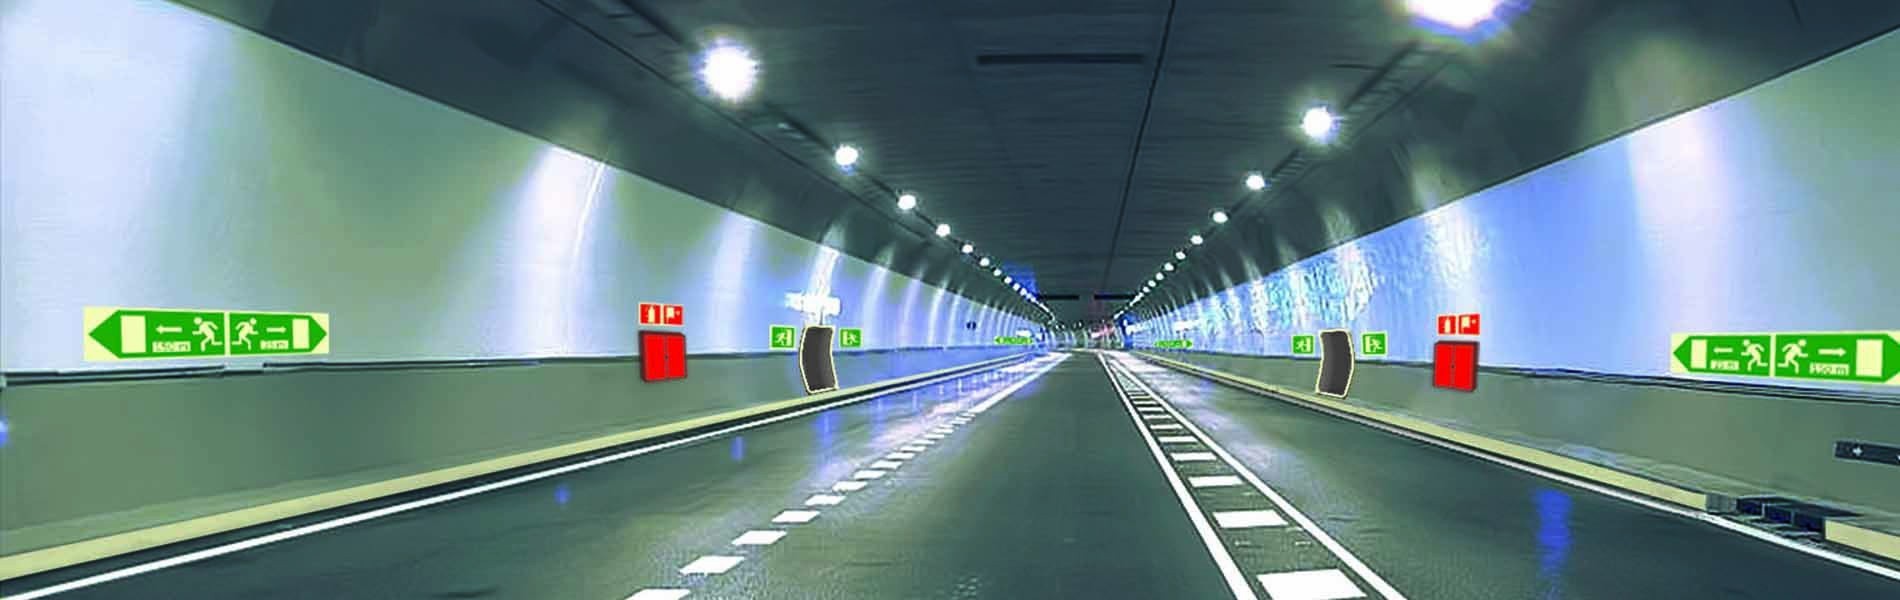 Señalizacion Fotoluminiscente de evacuación en túneles